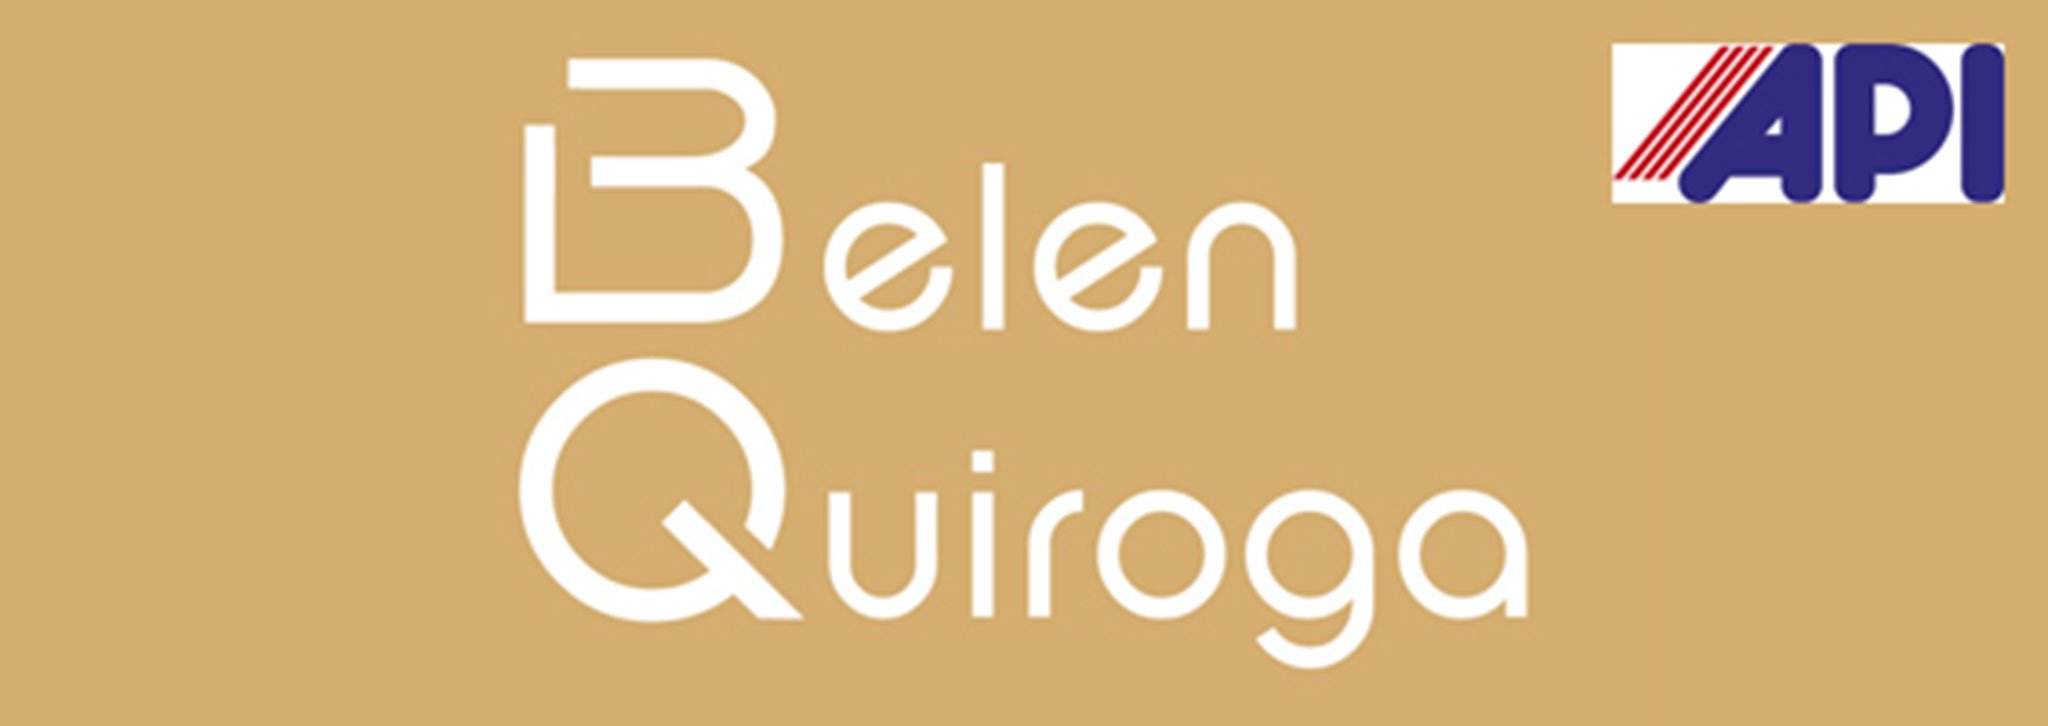 Logotipo de Inmobiliaria Belen Quiroga